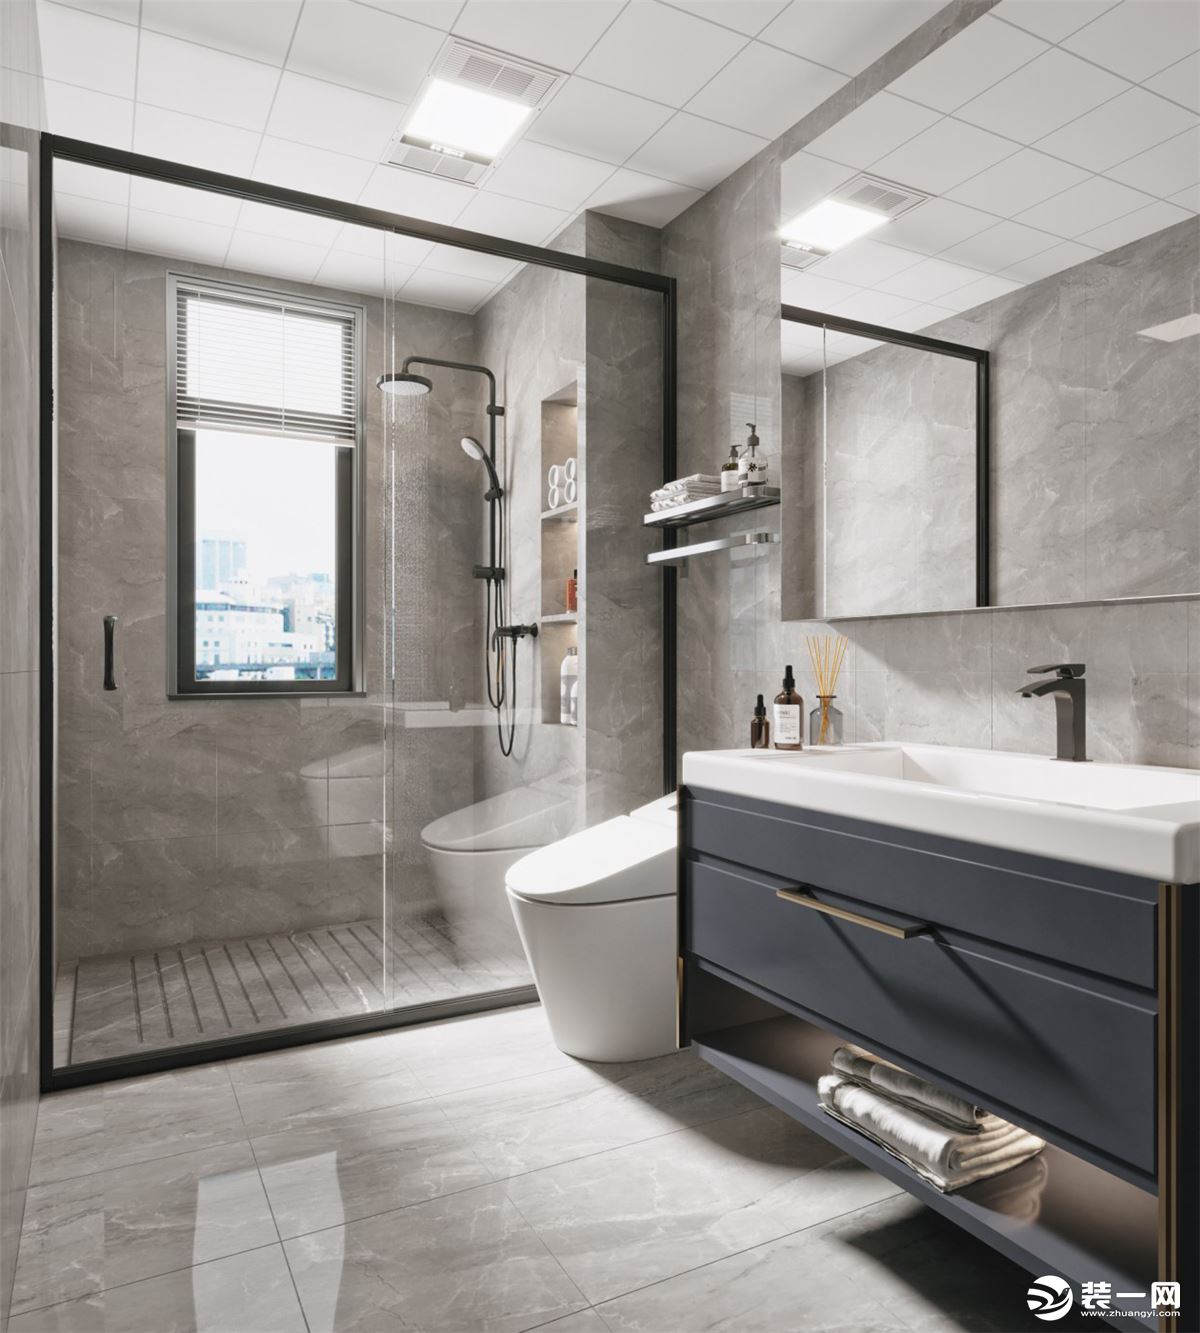 卫生间雾灰色的浴室柜显得时尚美观，墙排水设计没有卫生死角，干湿分离设计让空间层次分明，壁龛也方便使用